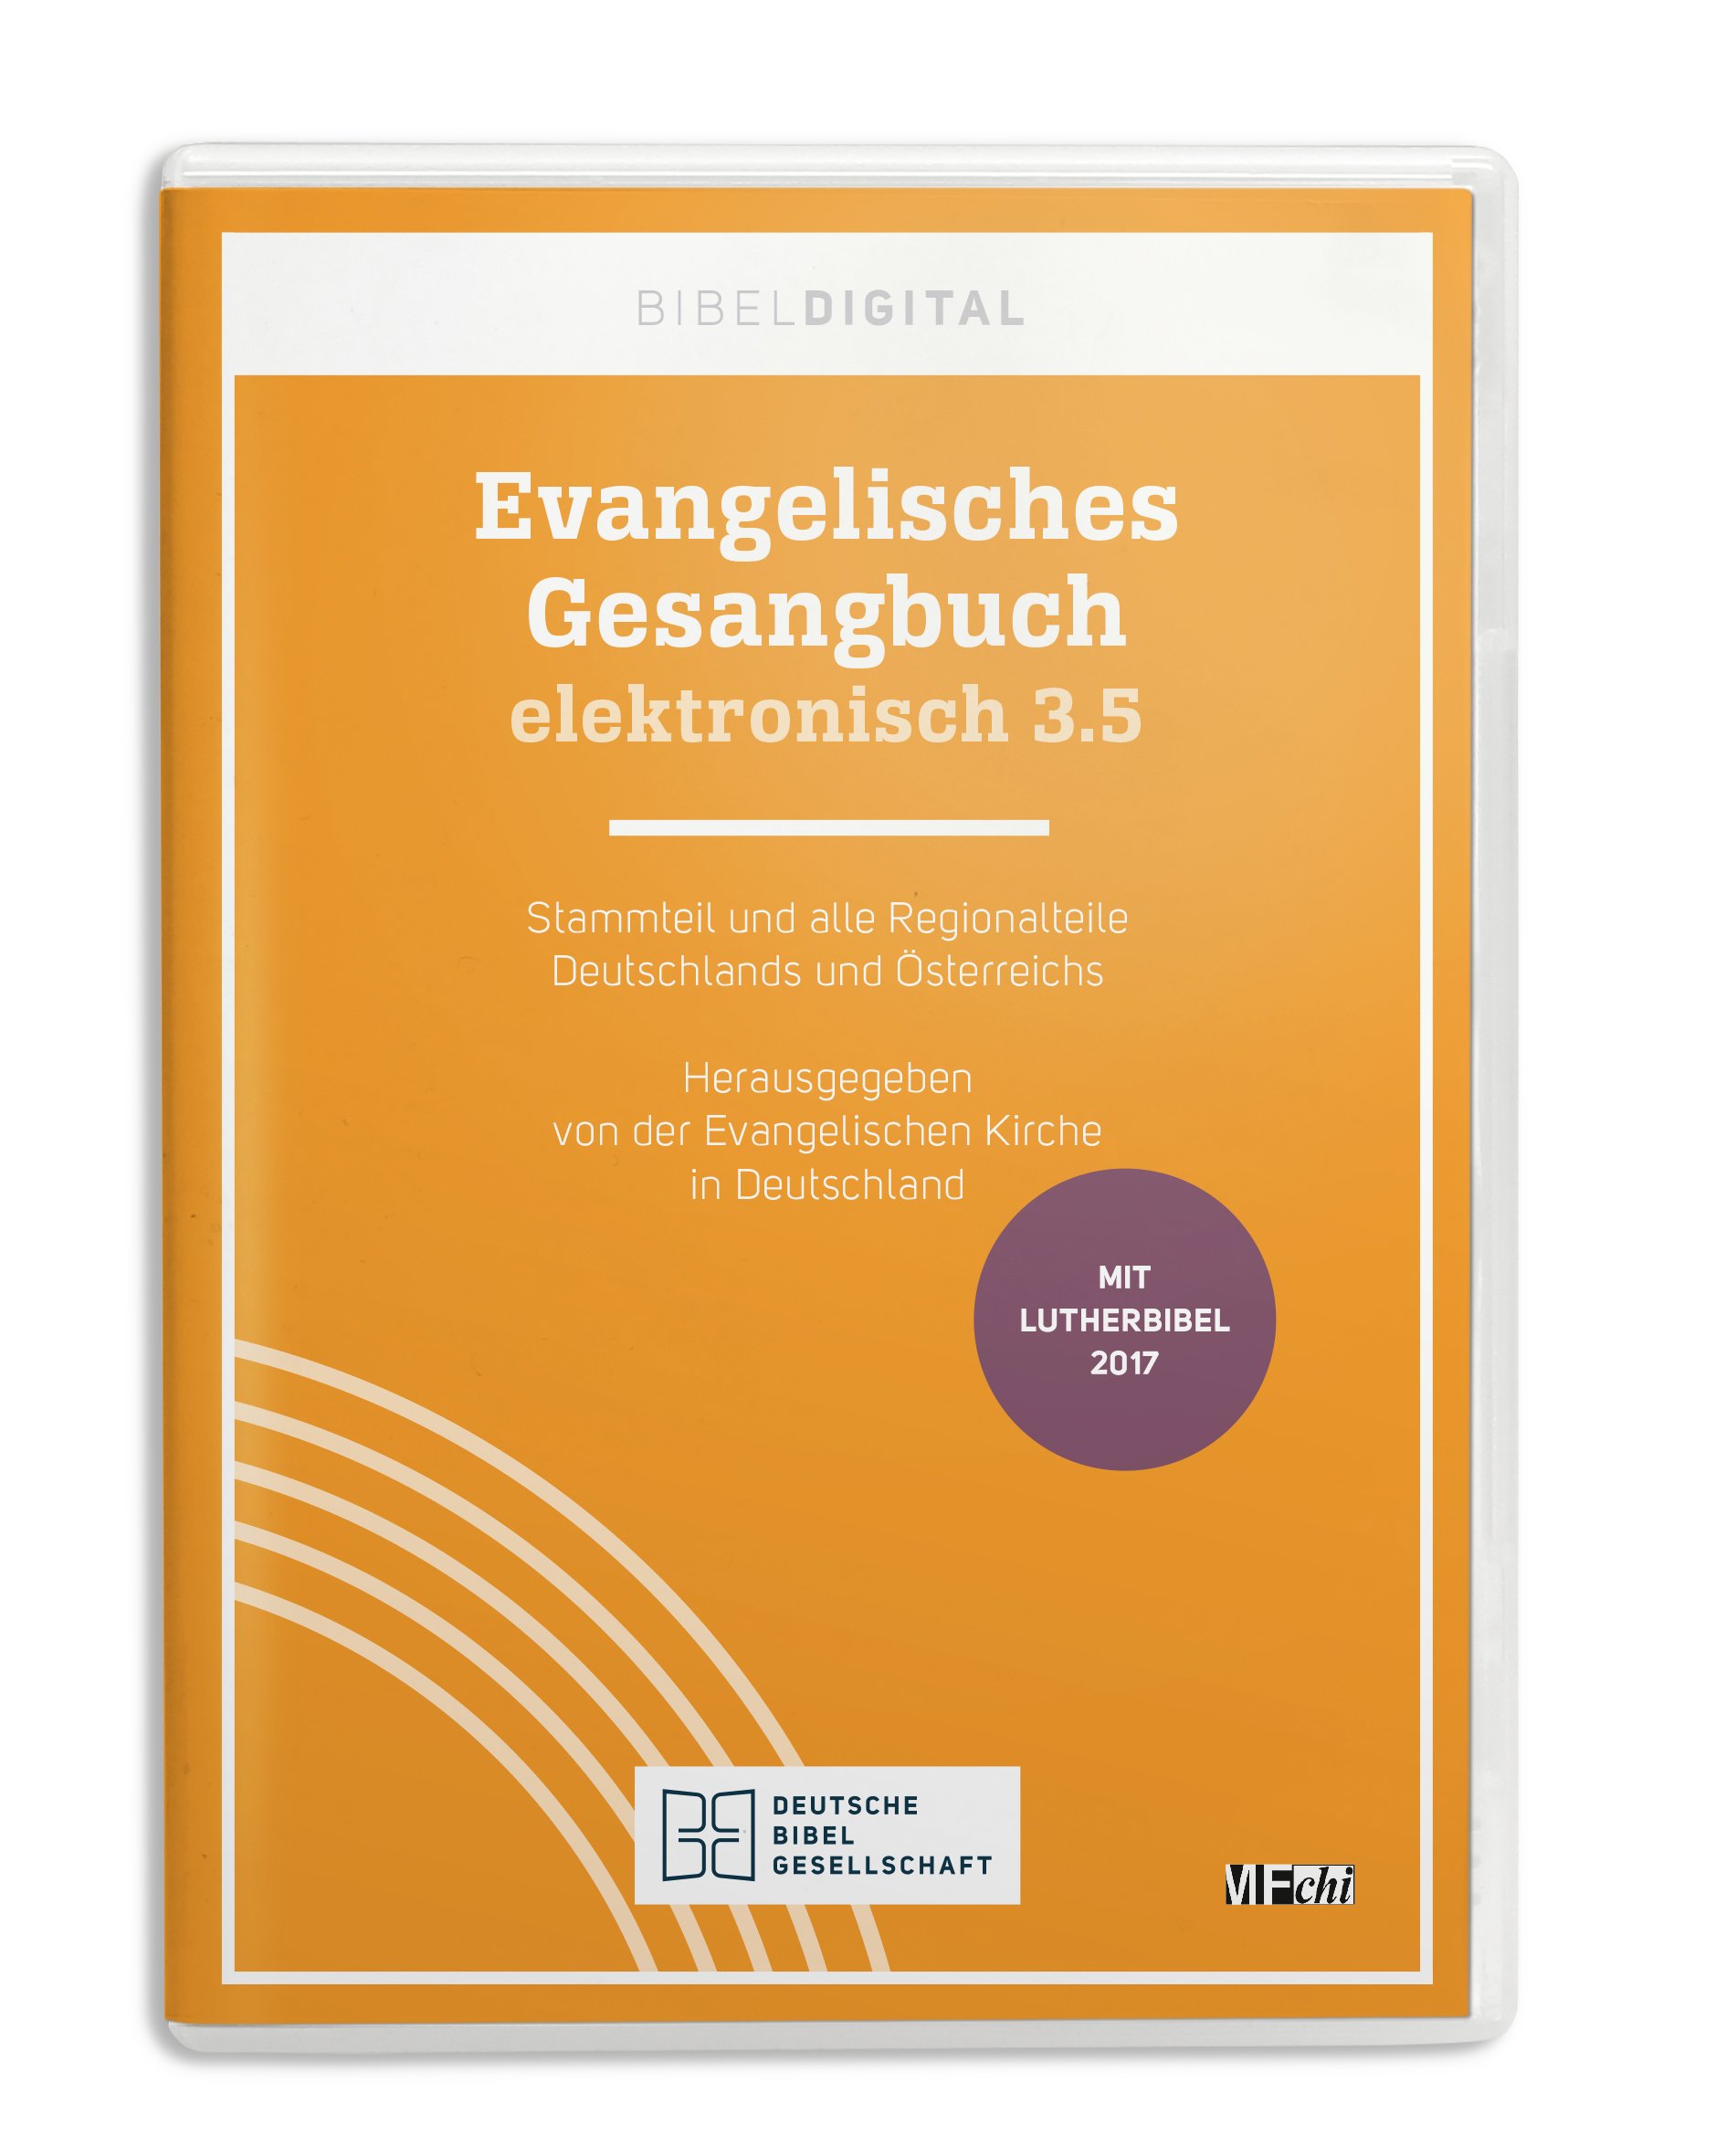 Evangelisches Gesangbuch elektronisch 3.5 - Cover